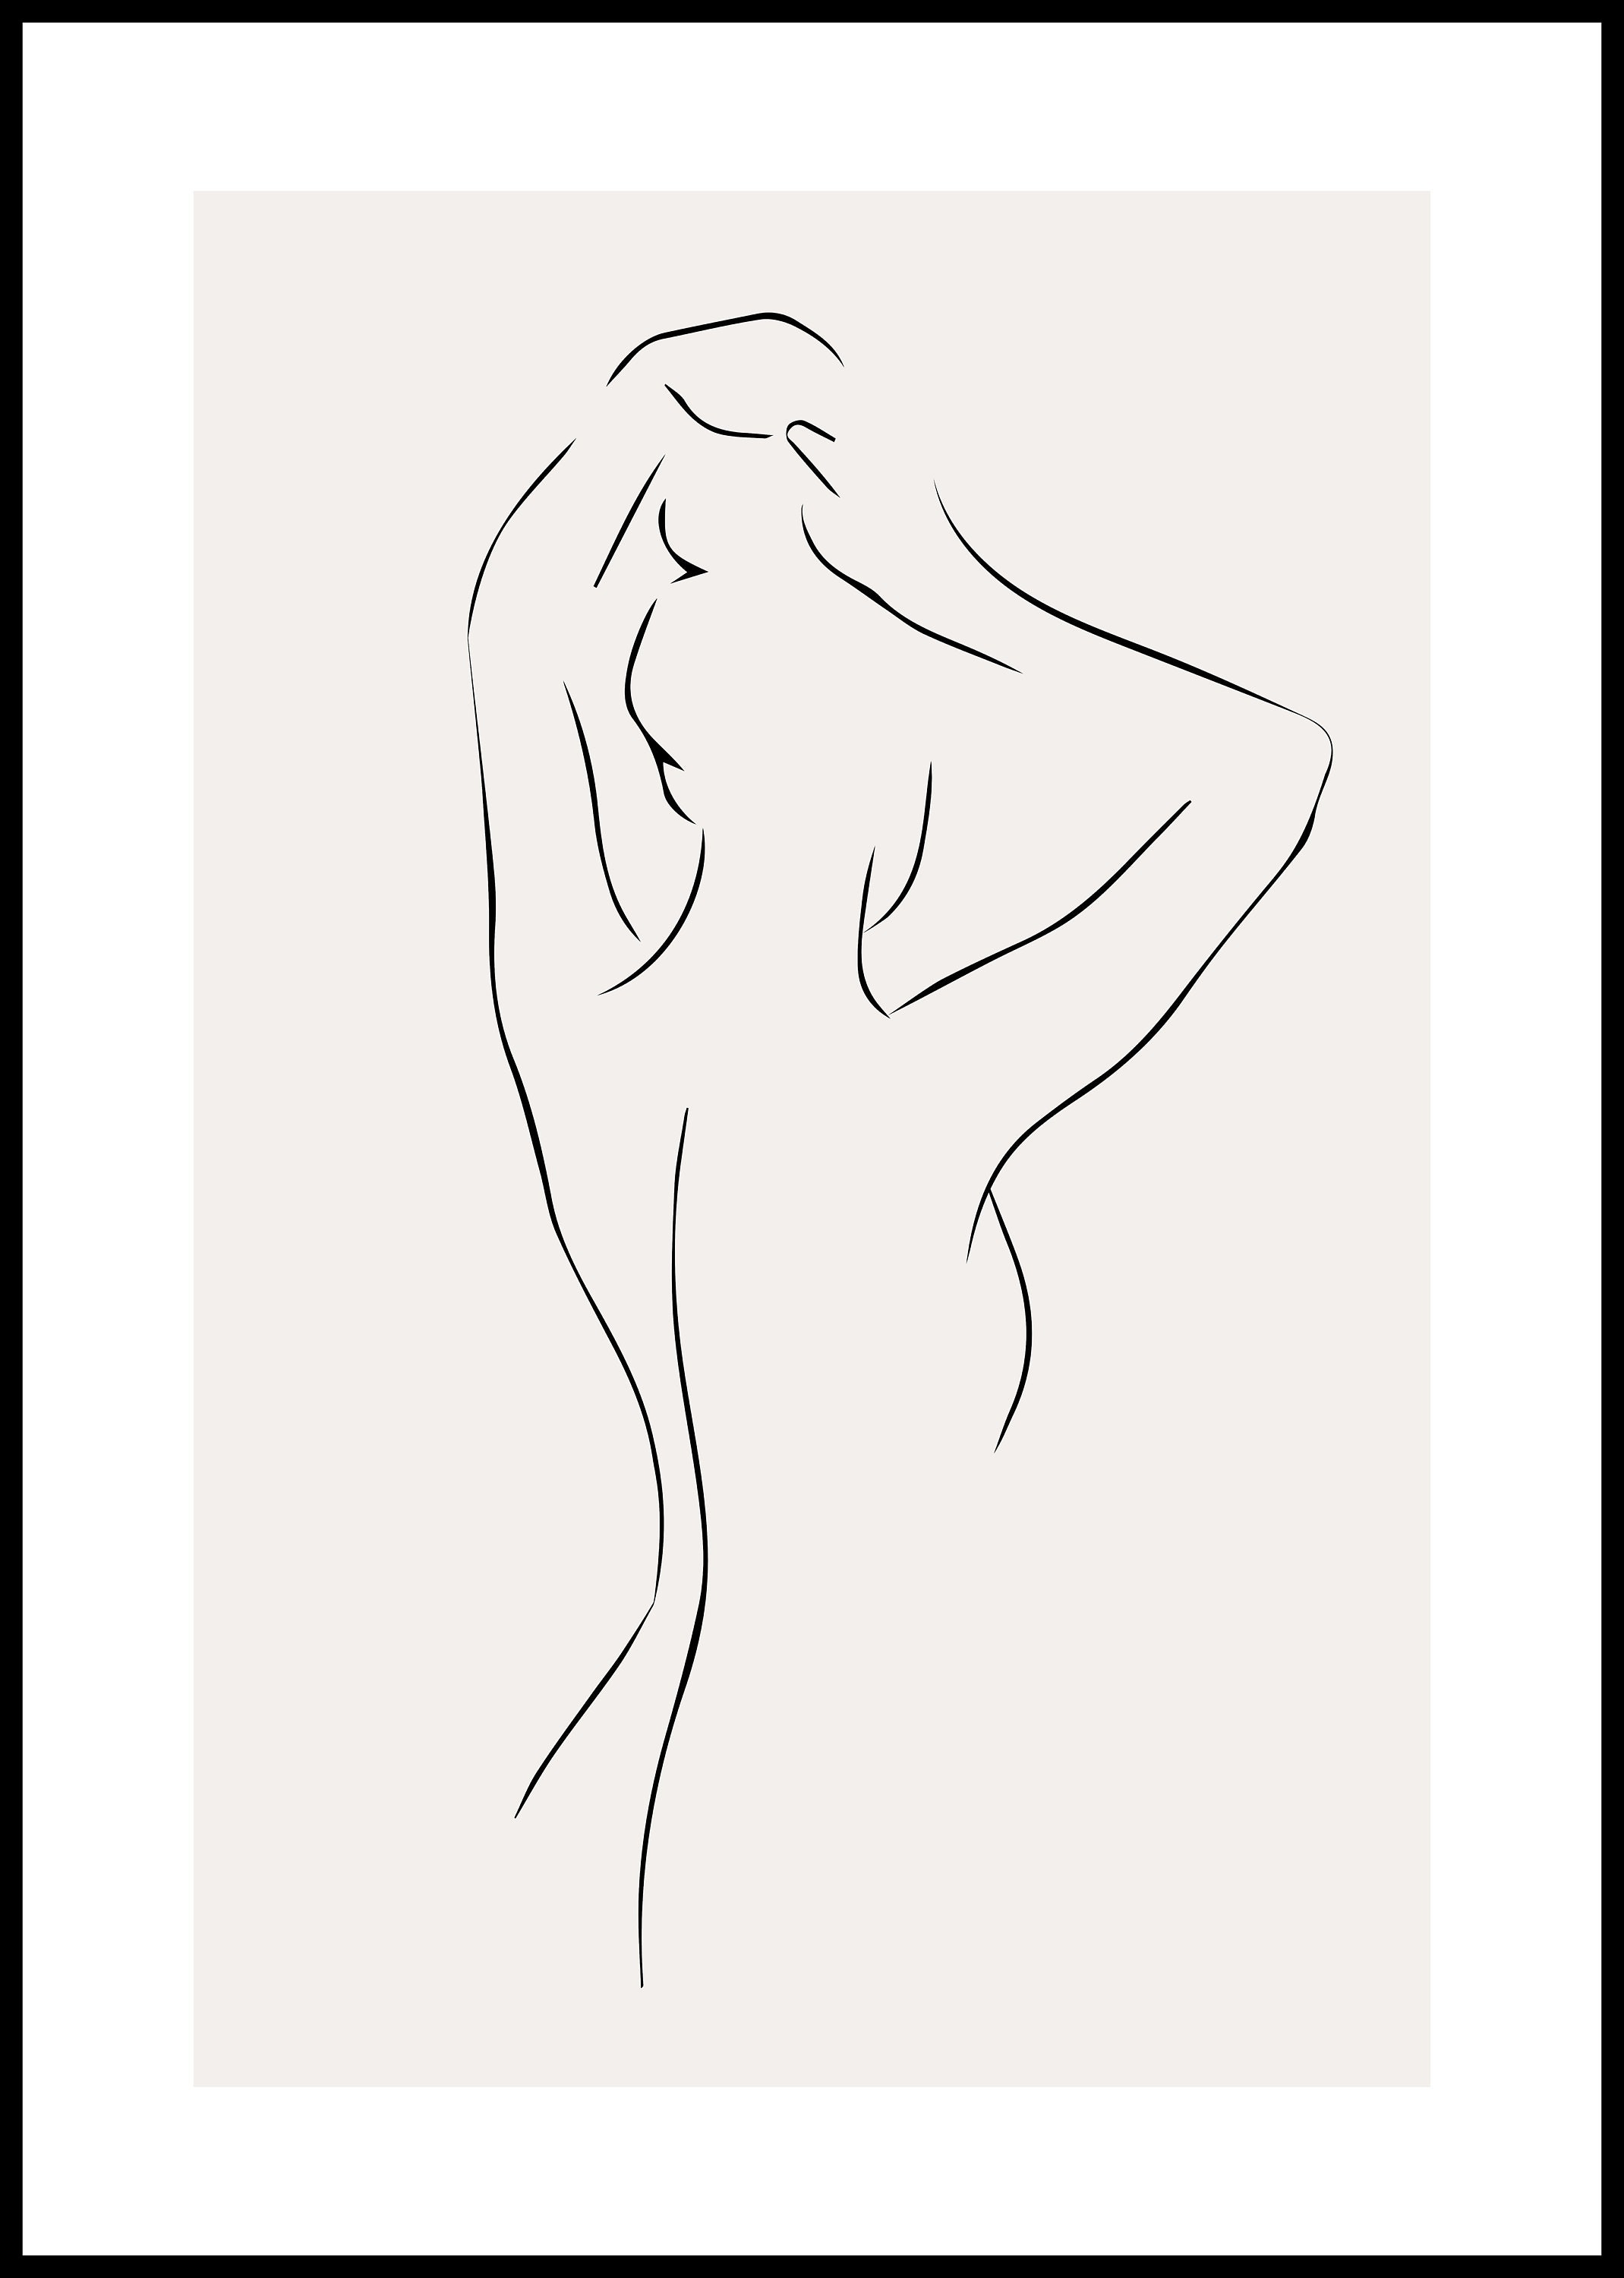 Dibujo de mujer y hobres desnudos echo en lapiz facil